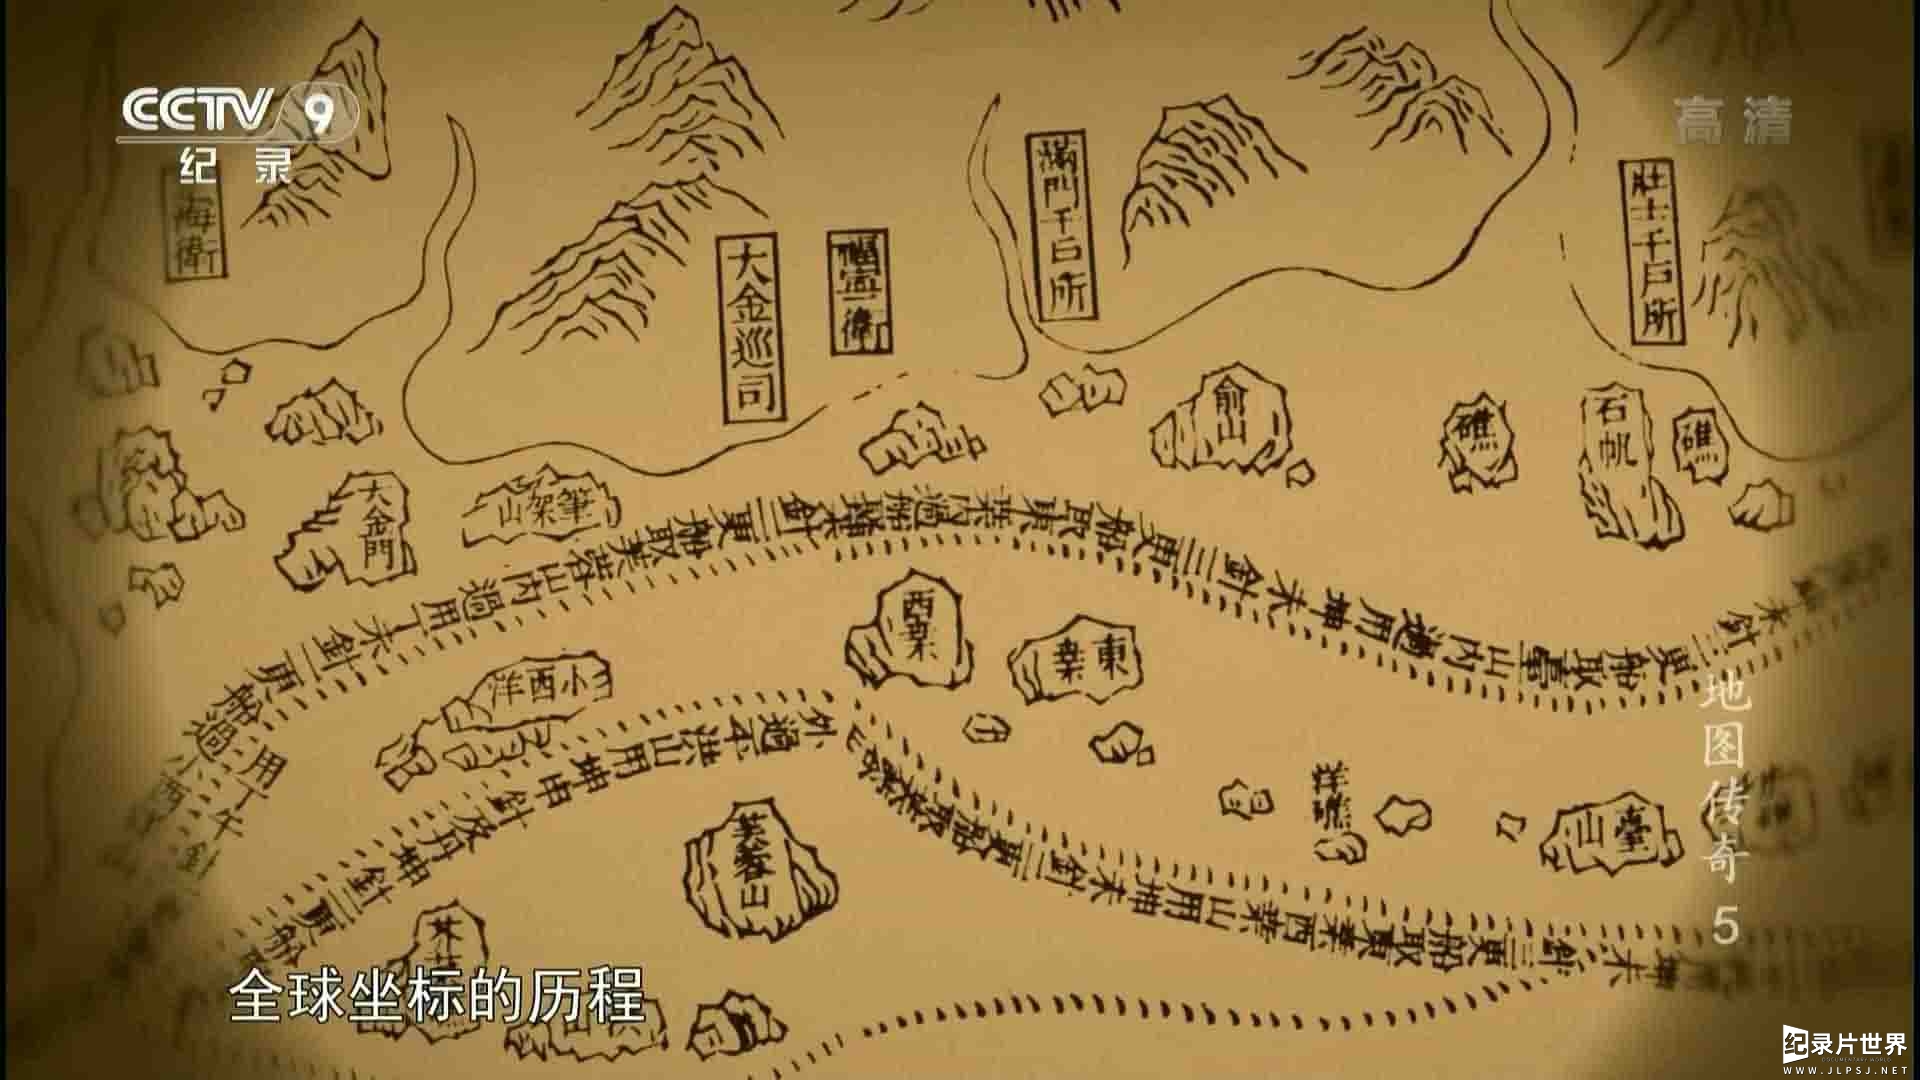 关于中国地图的纪录片《万象·地图传奇 The Legend of Maps》全8集 